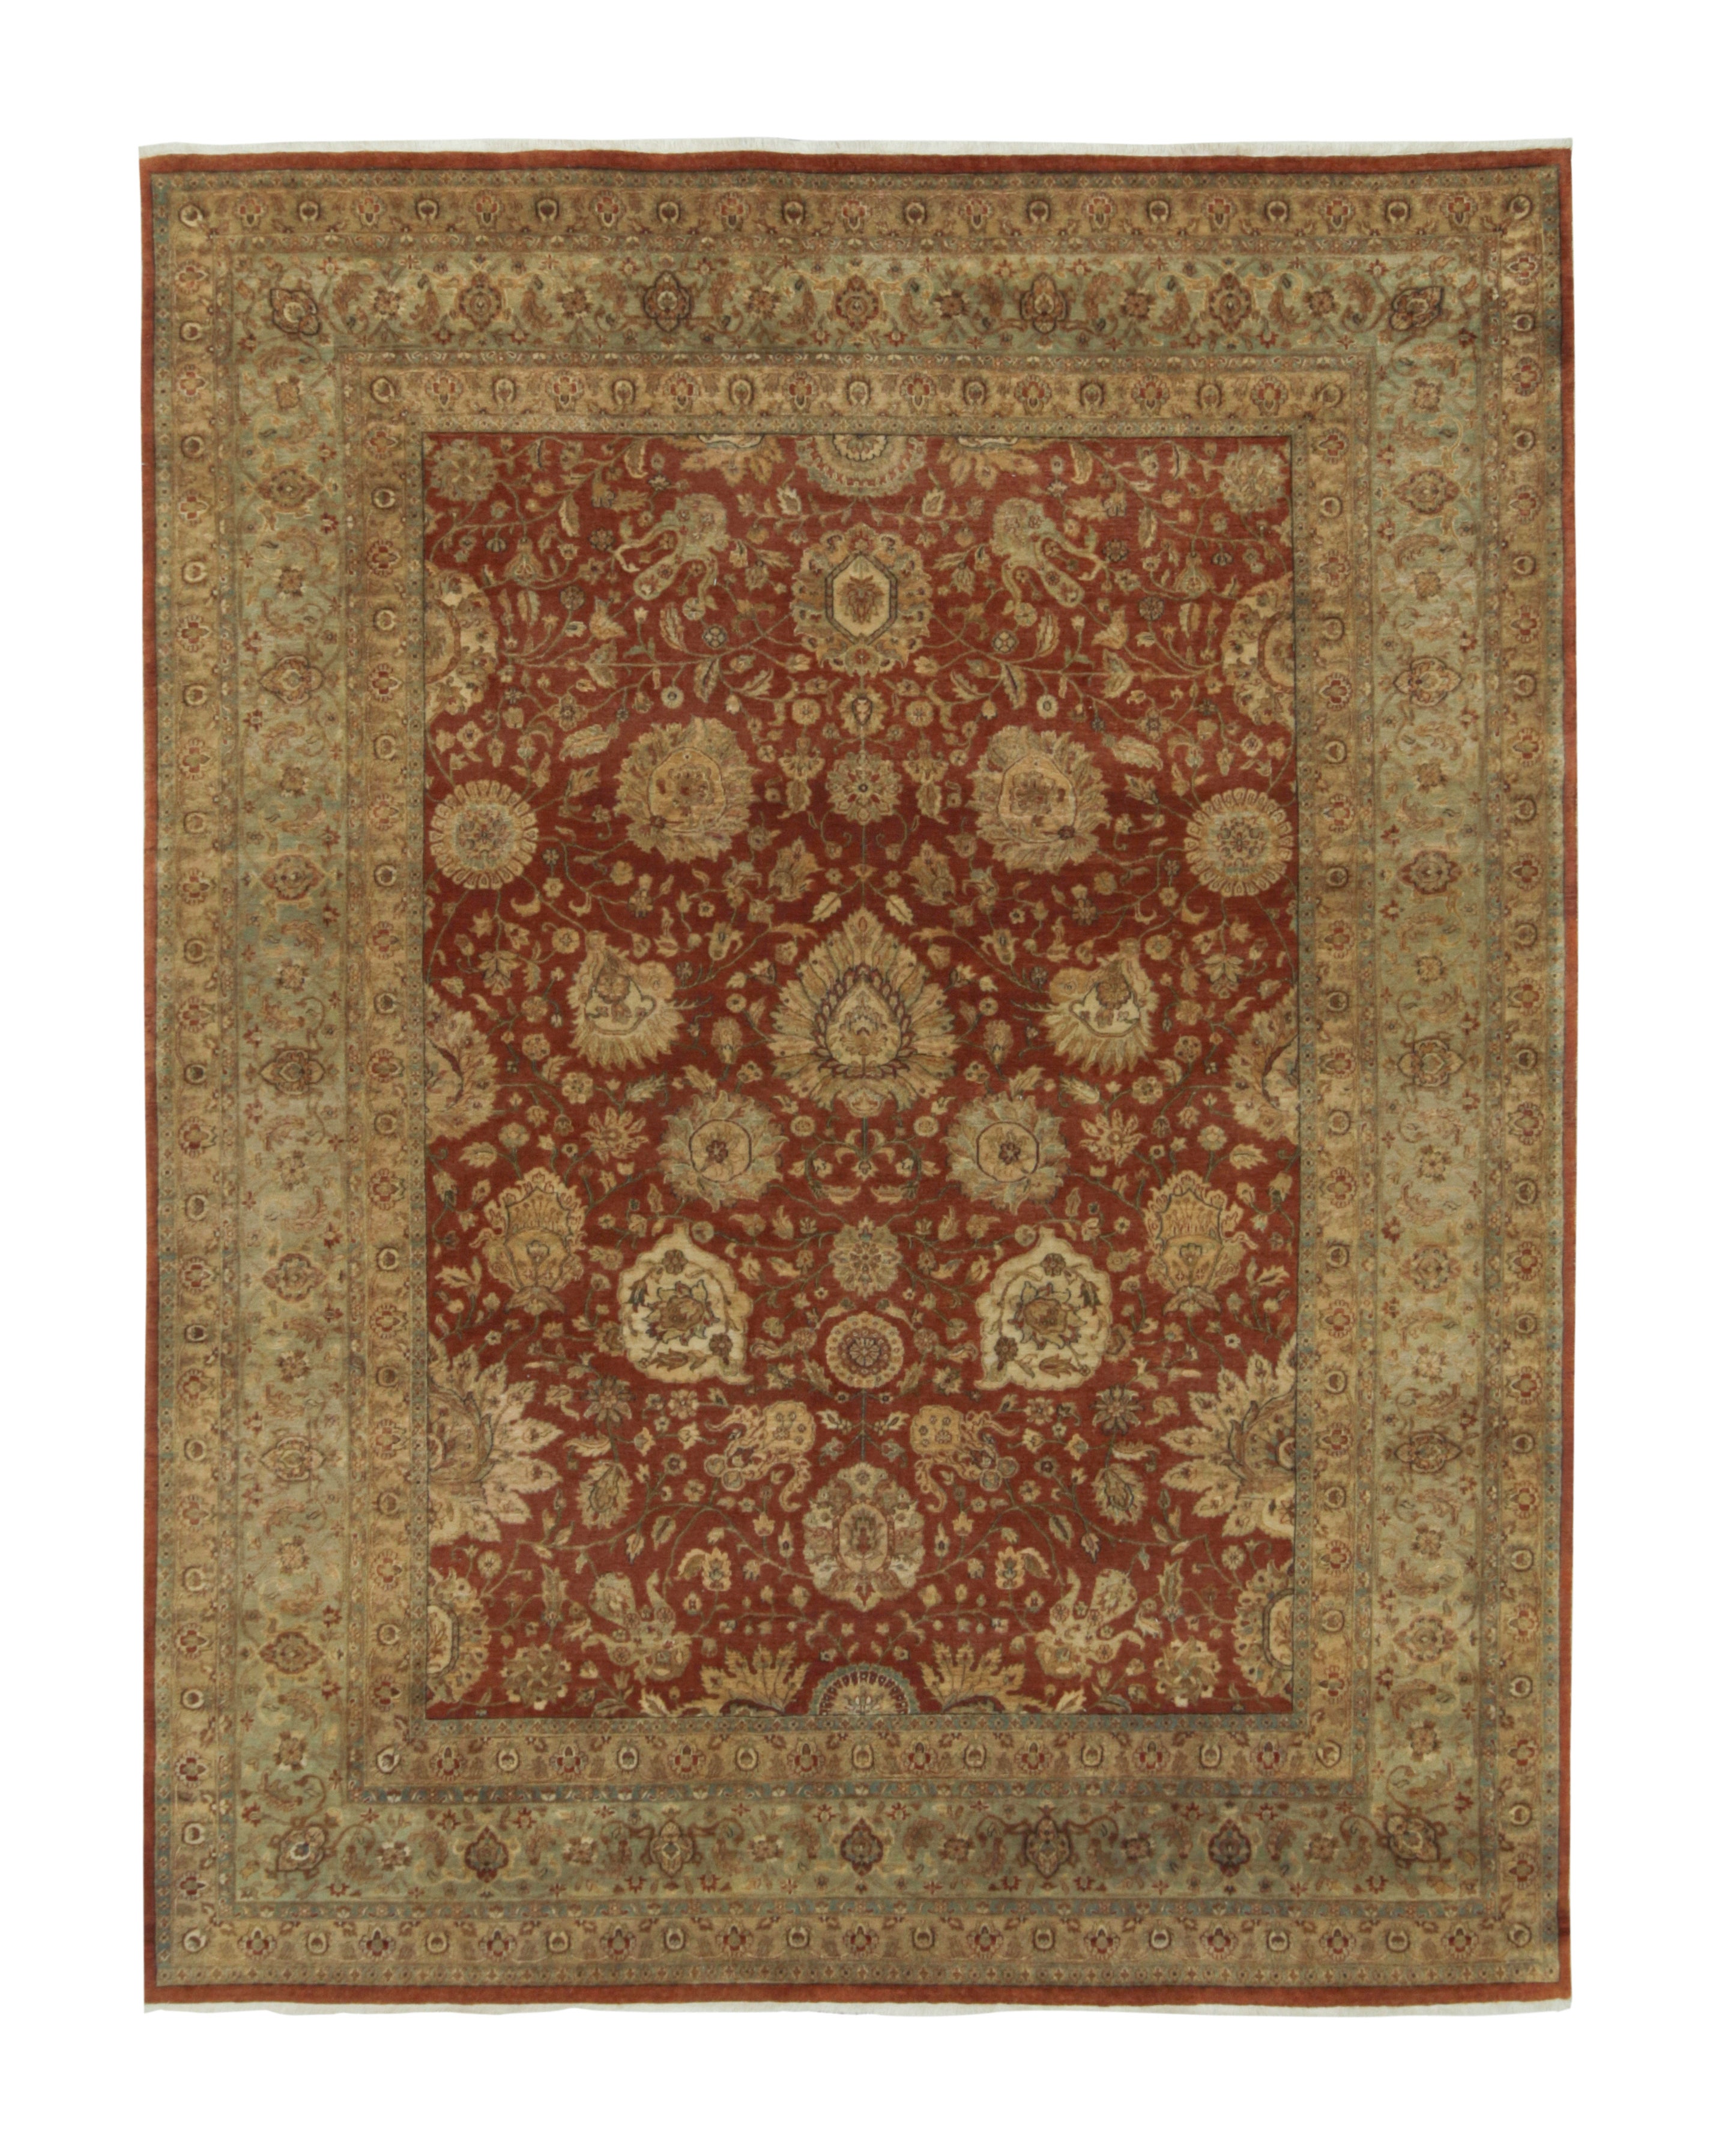 Teppich und Kelim-Teppich im persischen Täbris-Stil in Rot mit Gold- und Beige-Blumenmuster